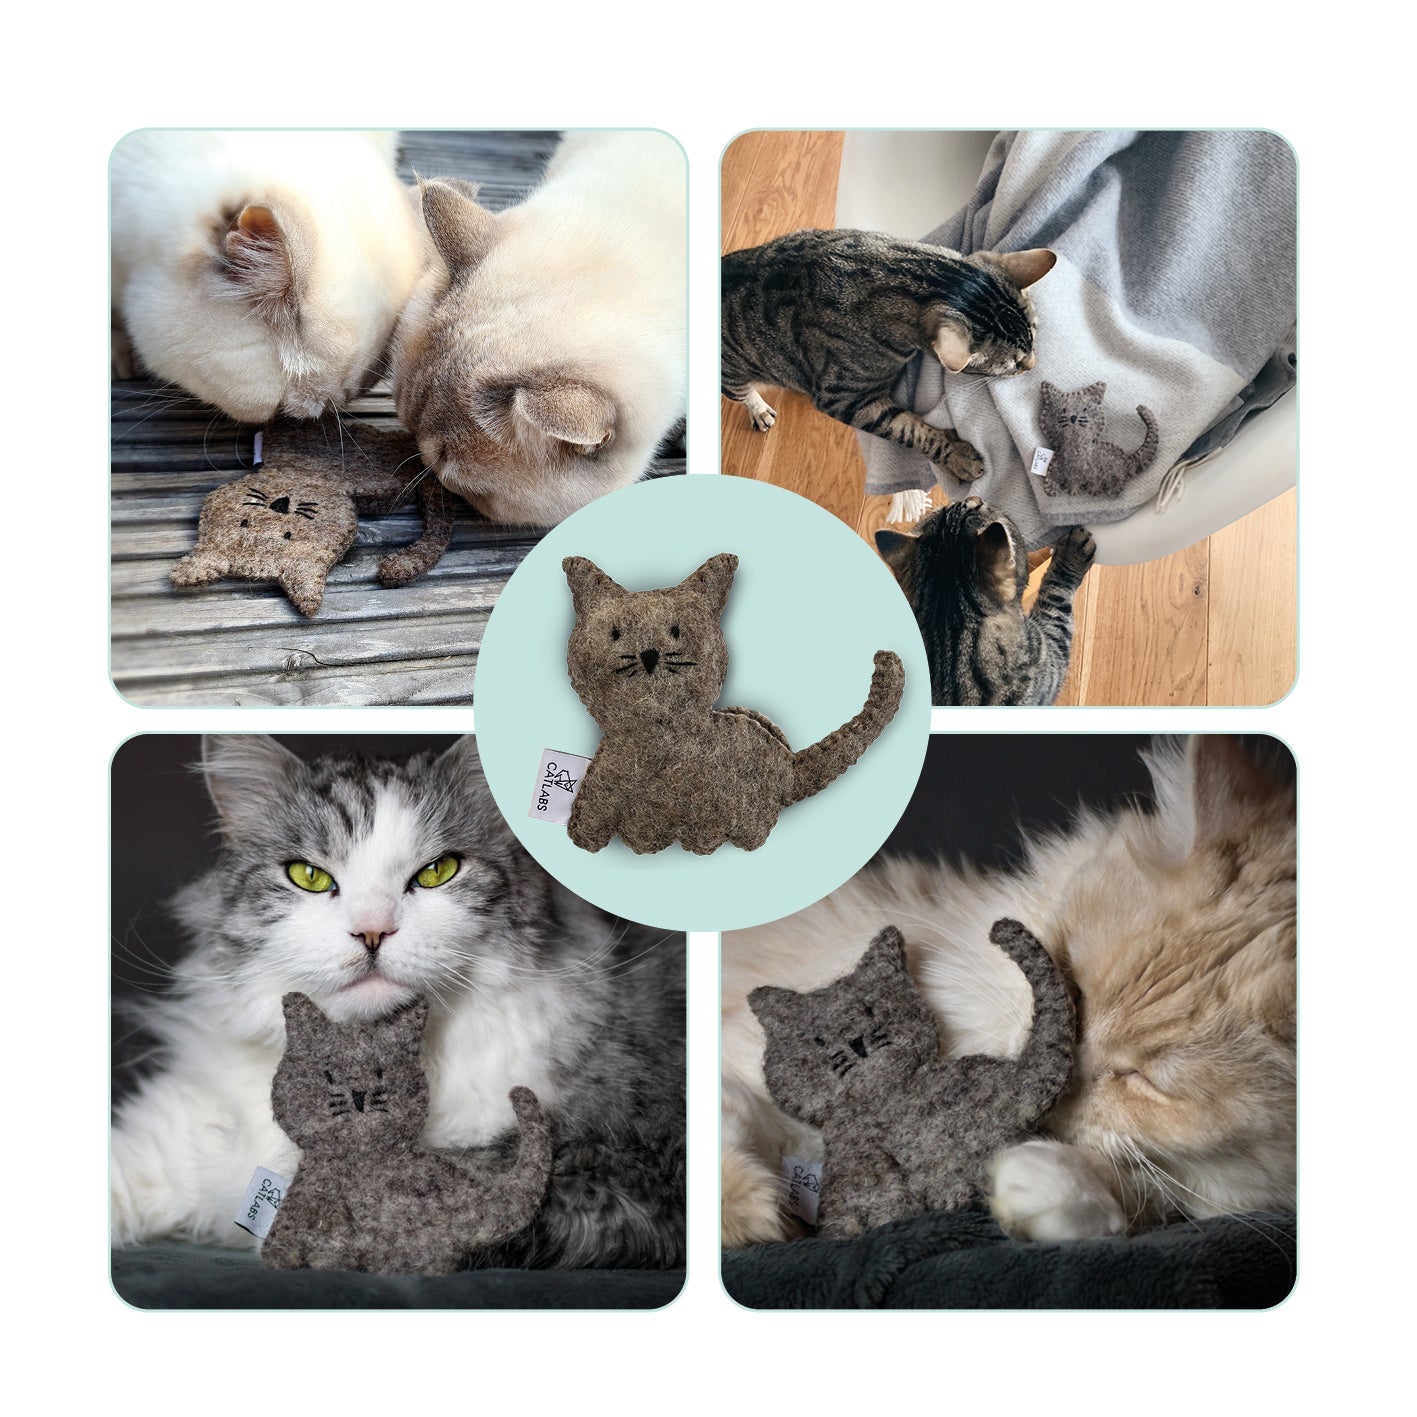 Katzenspielzeug "Kuschelige Katze" mit Katzenminze